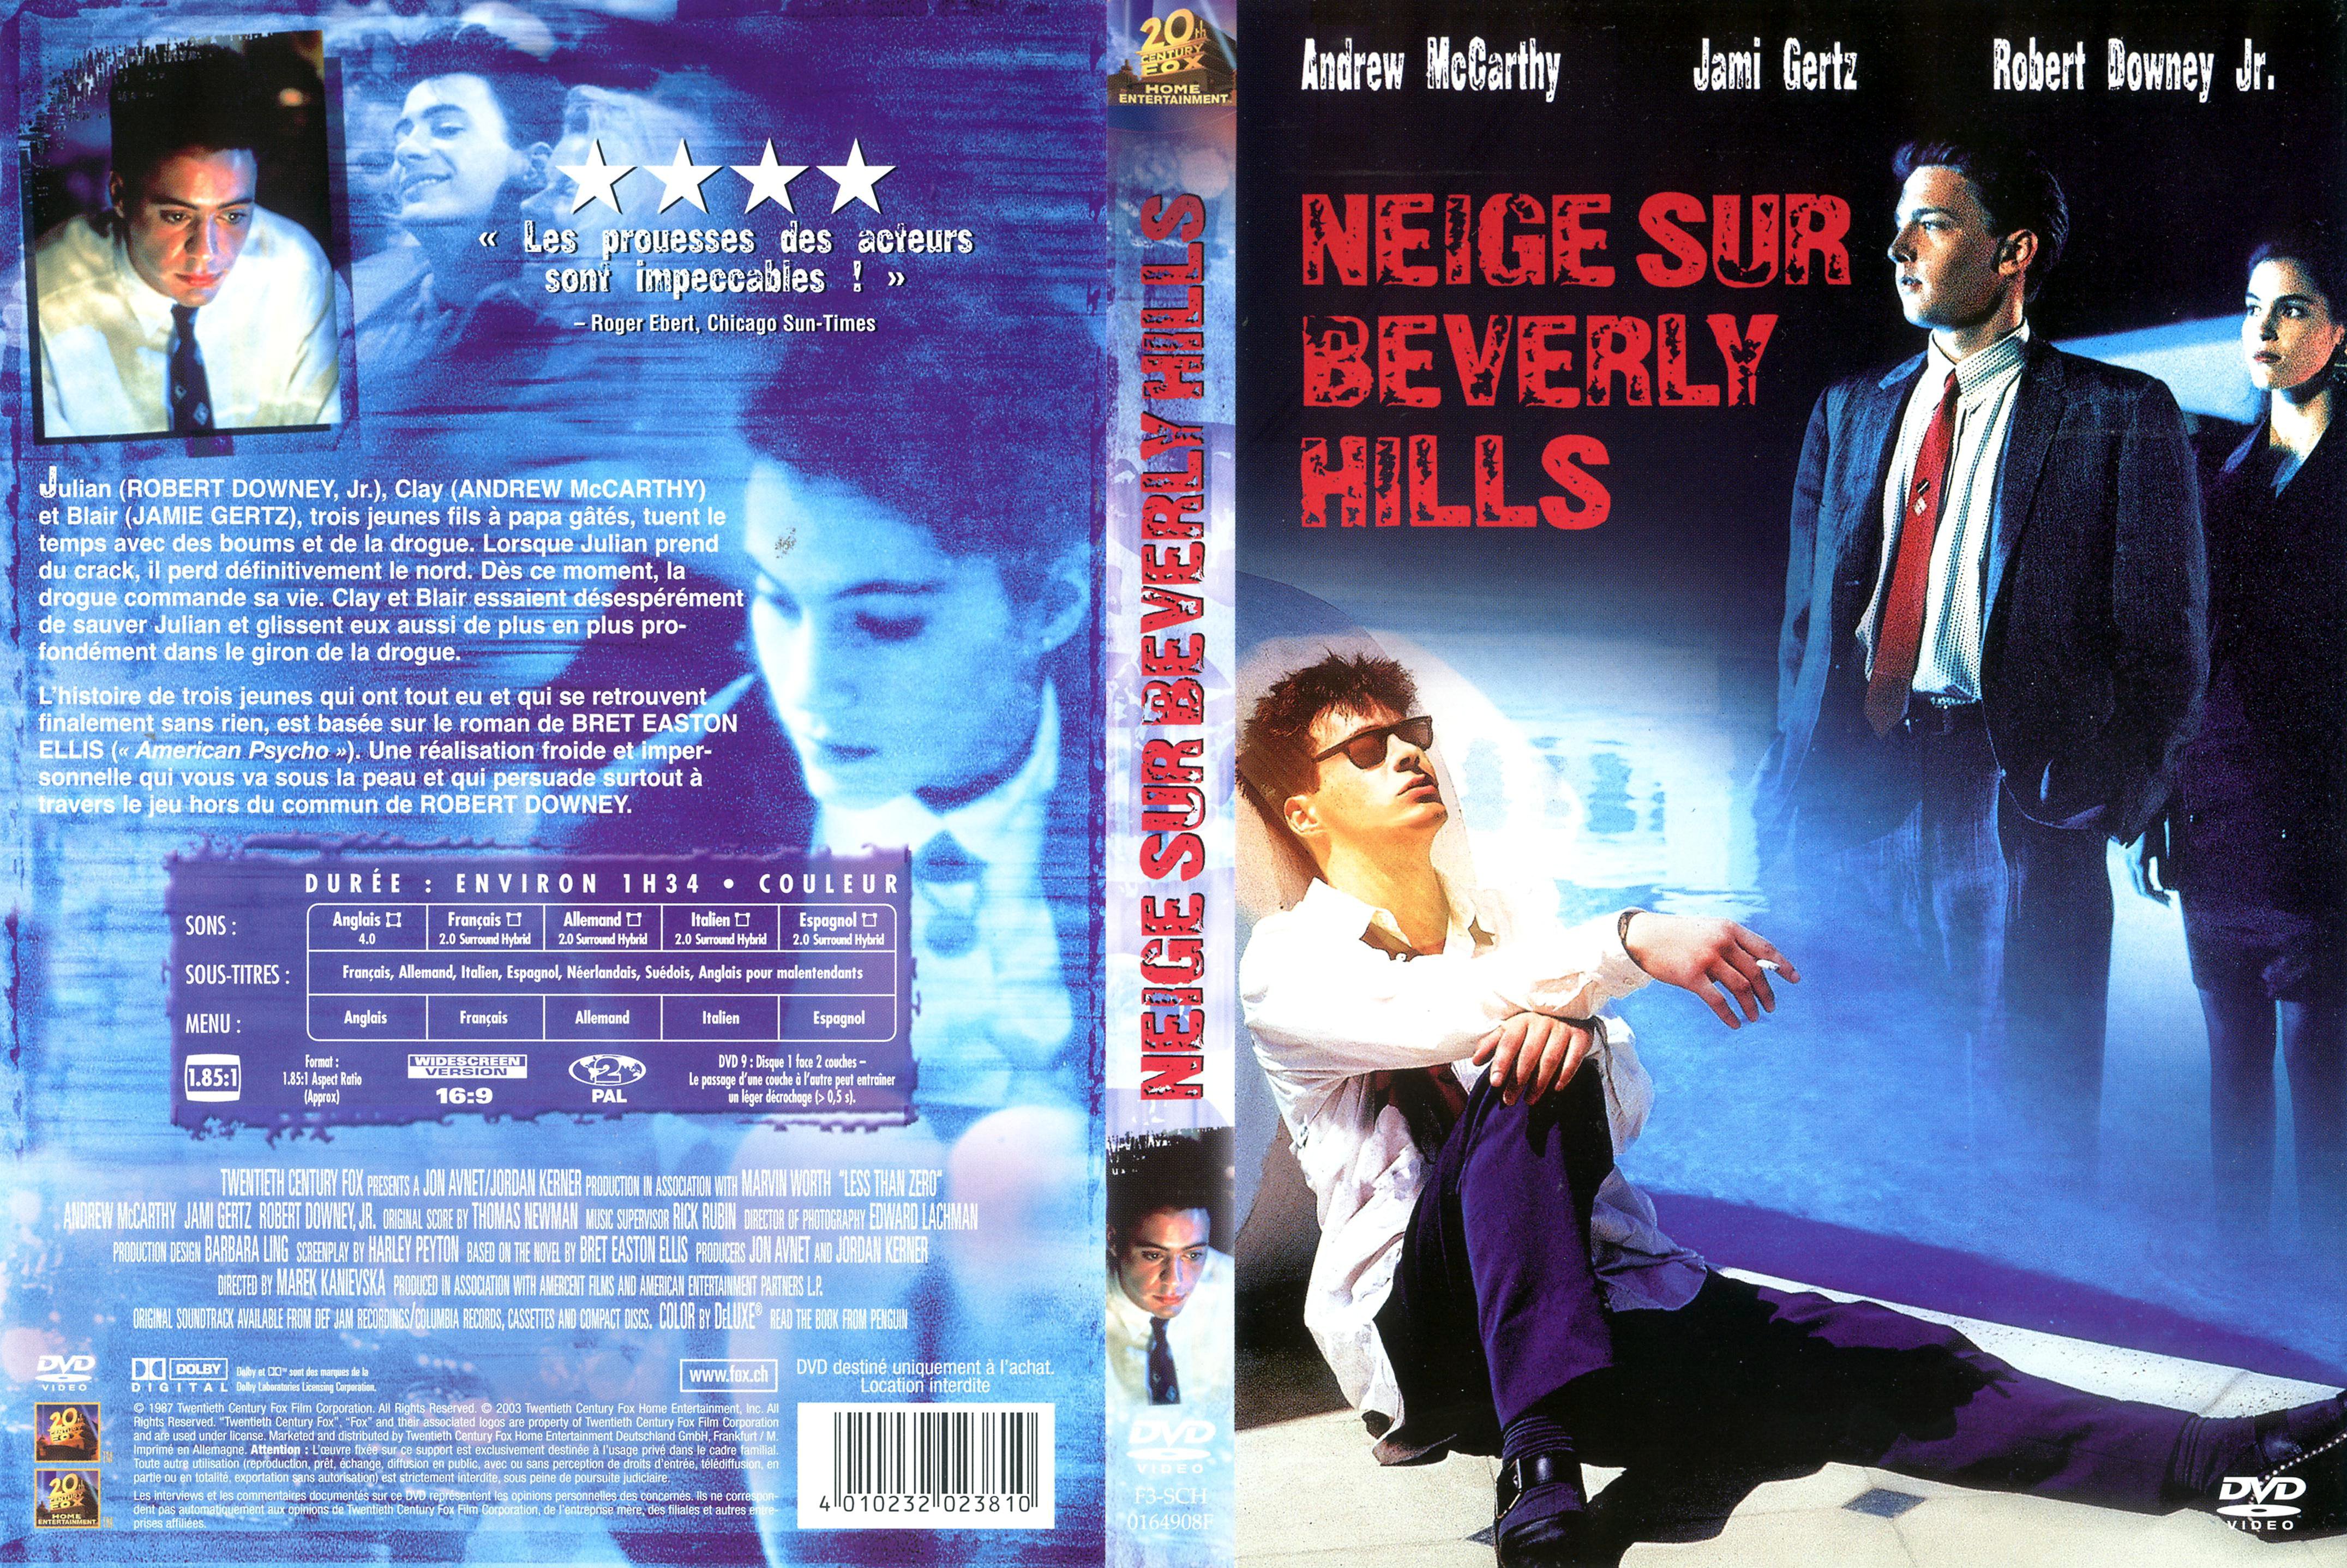 Jaquette DVD Neige sur Beverly Hills v2